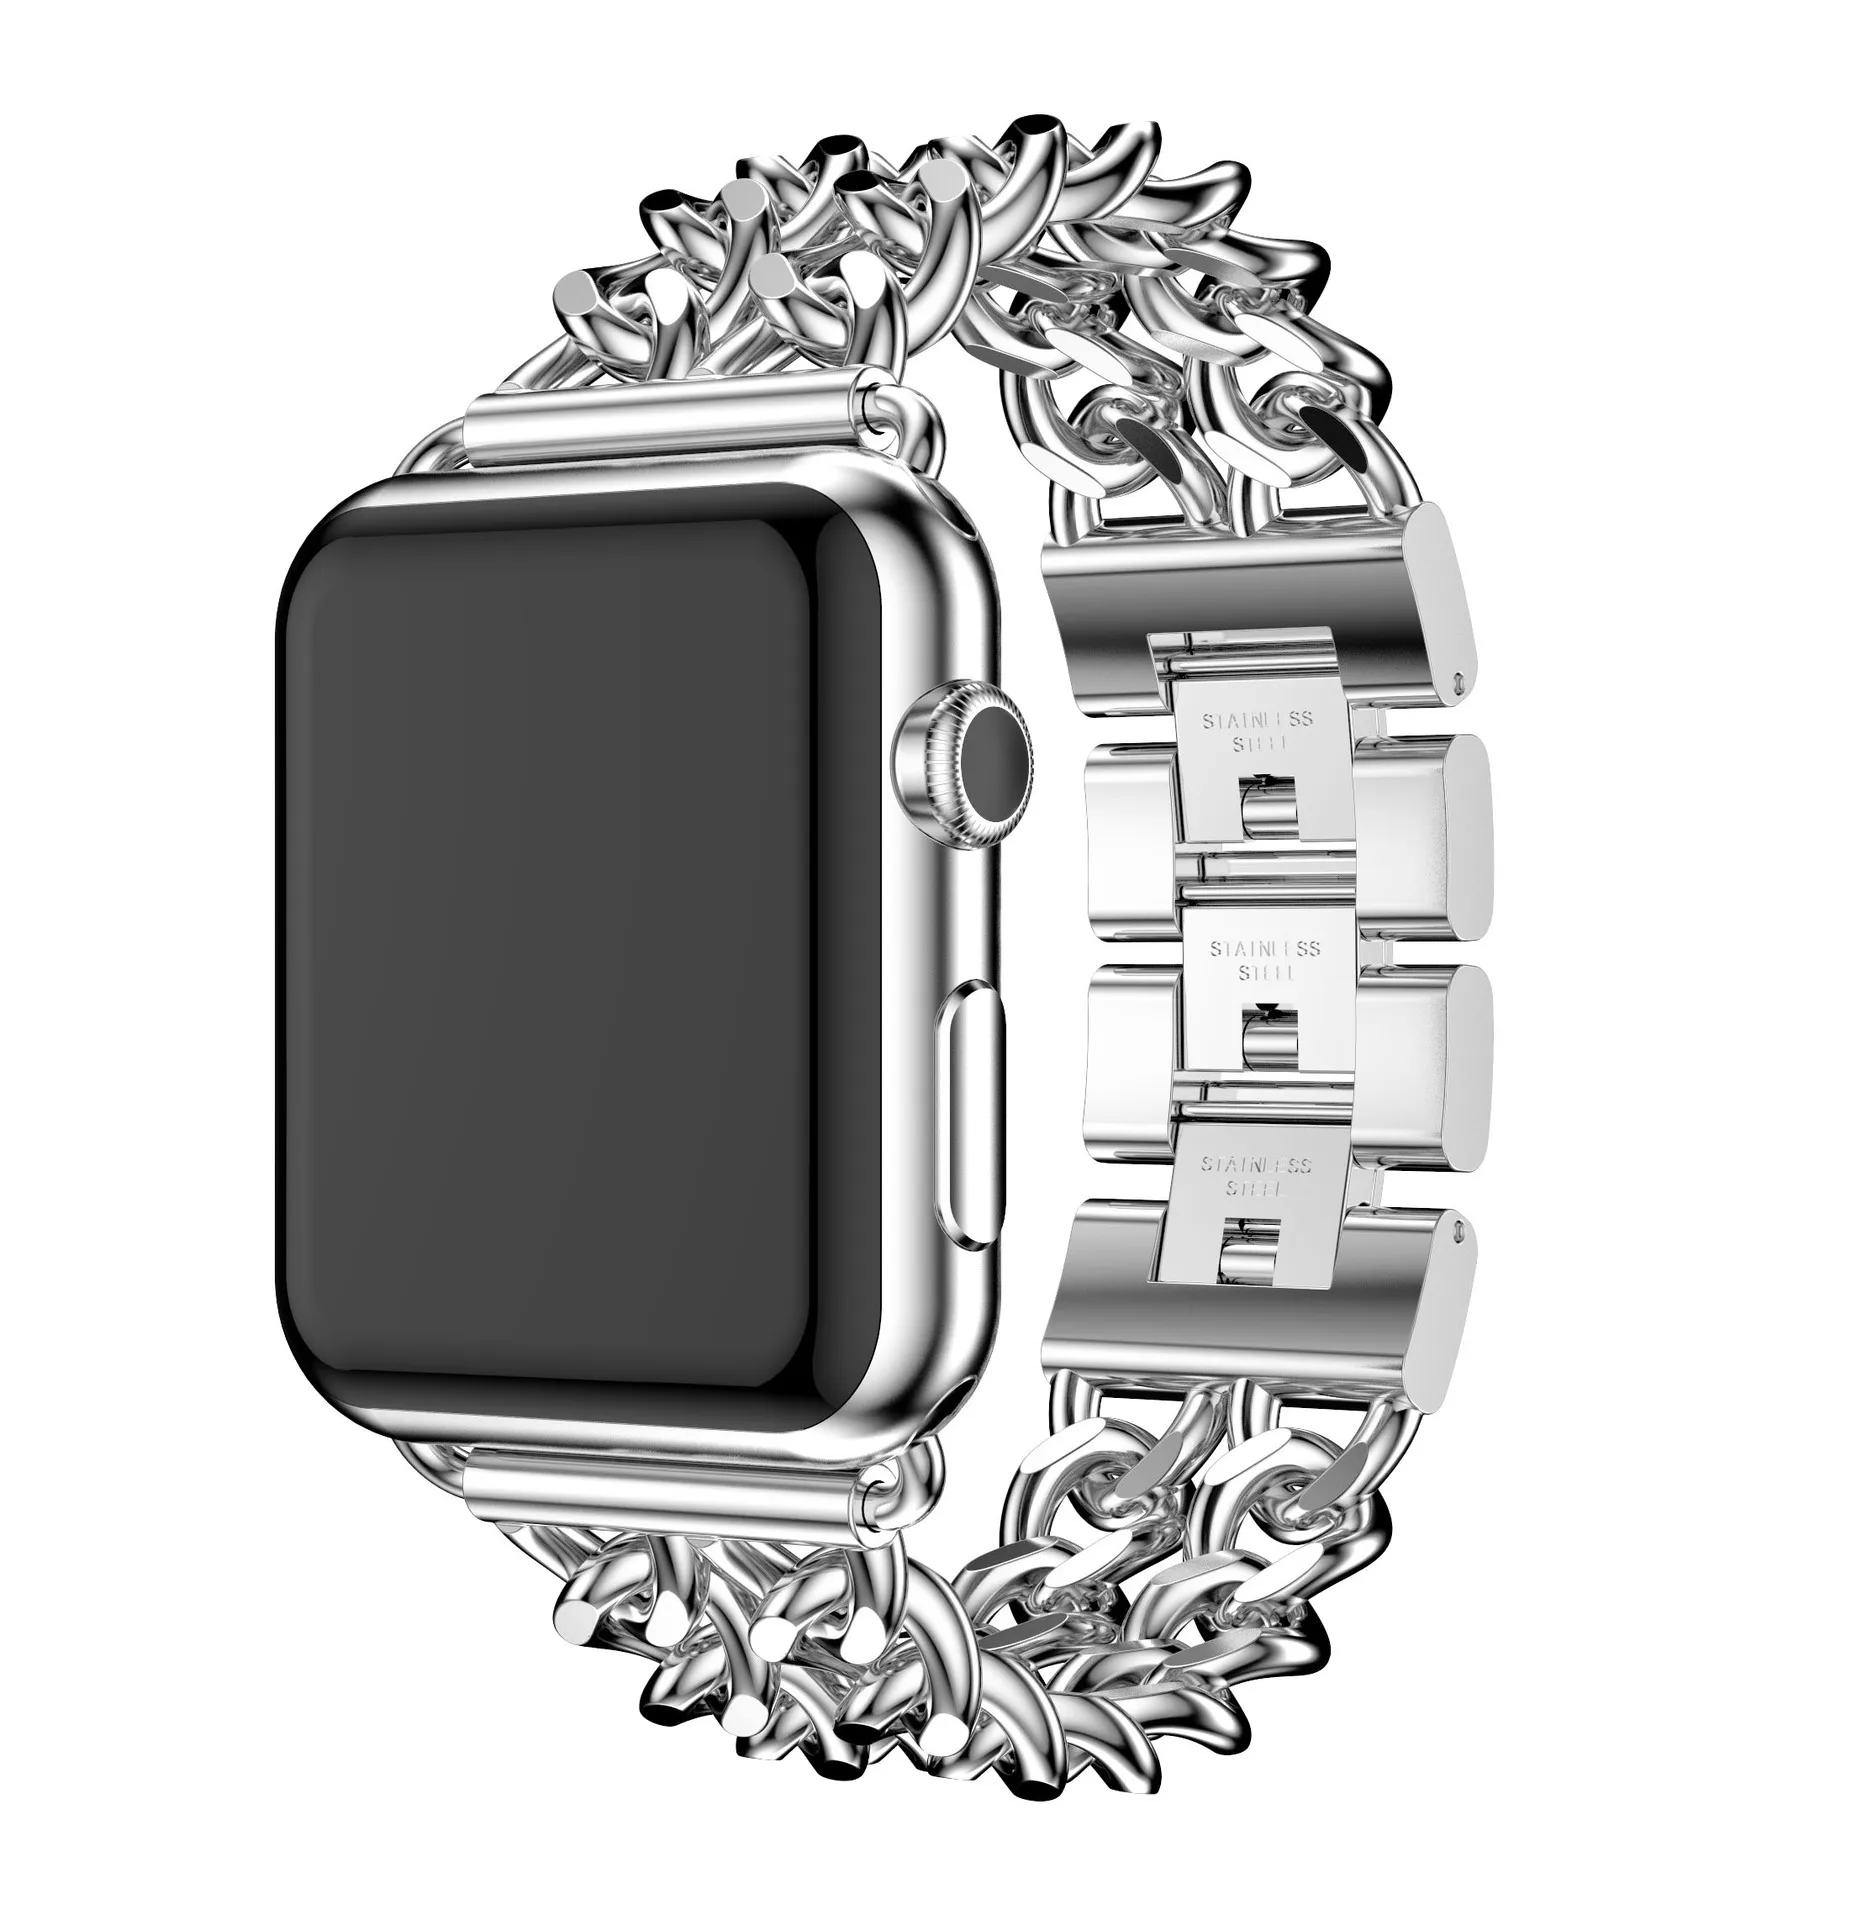 Wysokiej jakości ze stali nierdzewnej strefę czasową z etui garnitur dla Apple Watch Mc 1/2/3 zegarek pasek bransoletka zapięcie 42 mm/38 mm